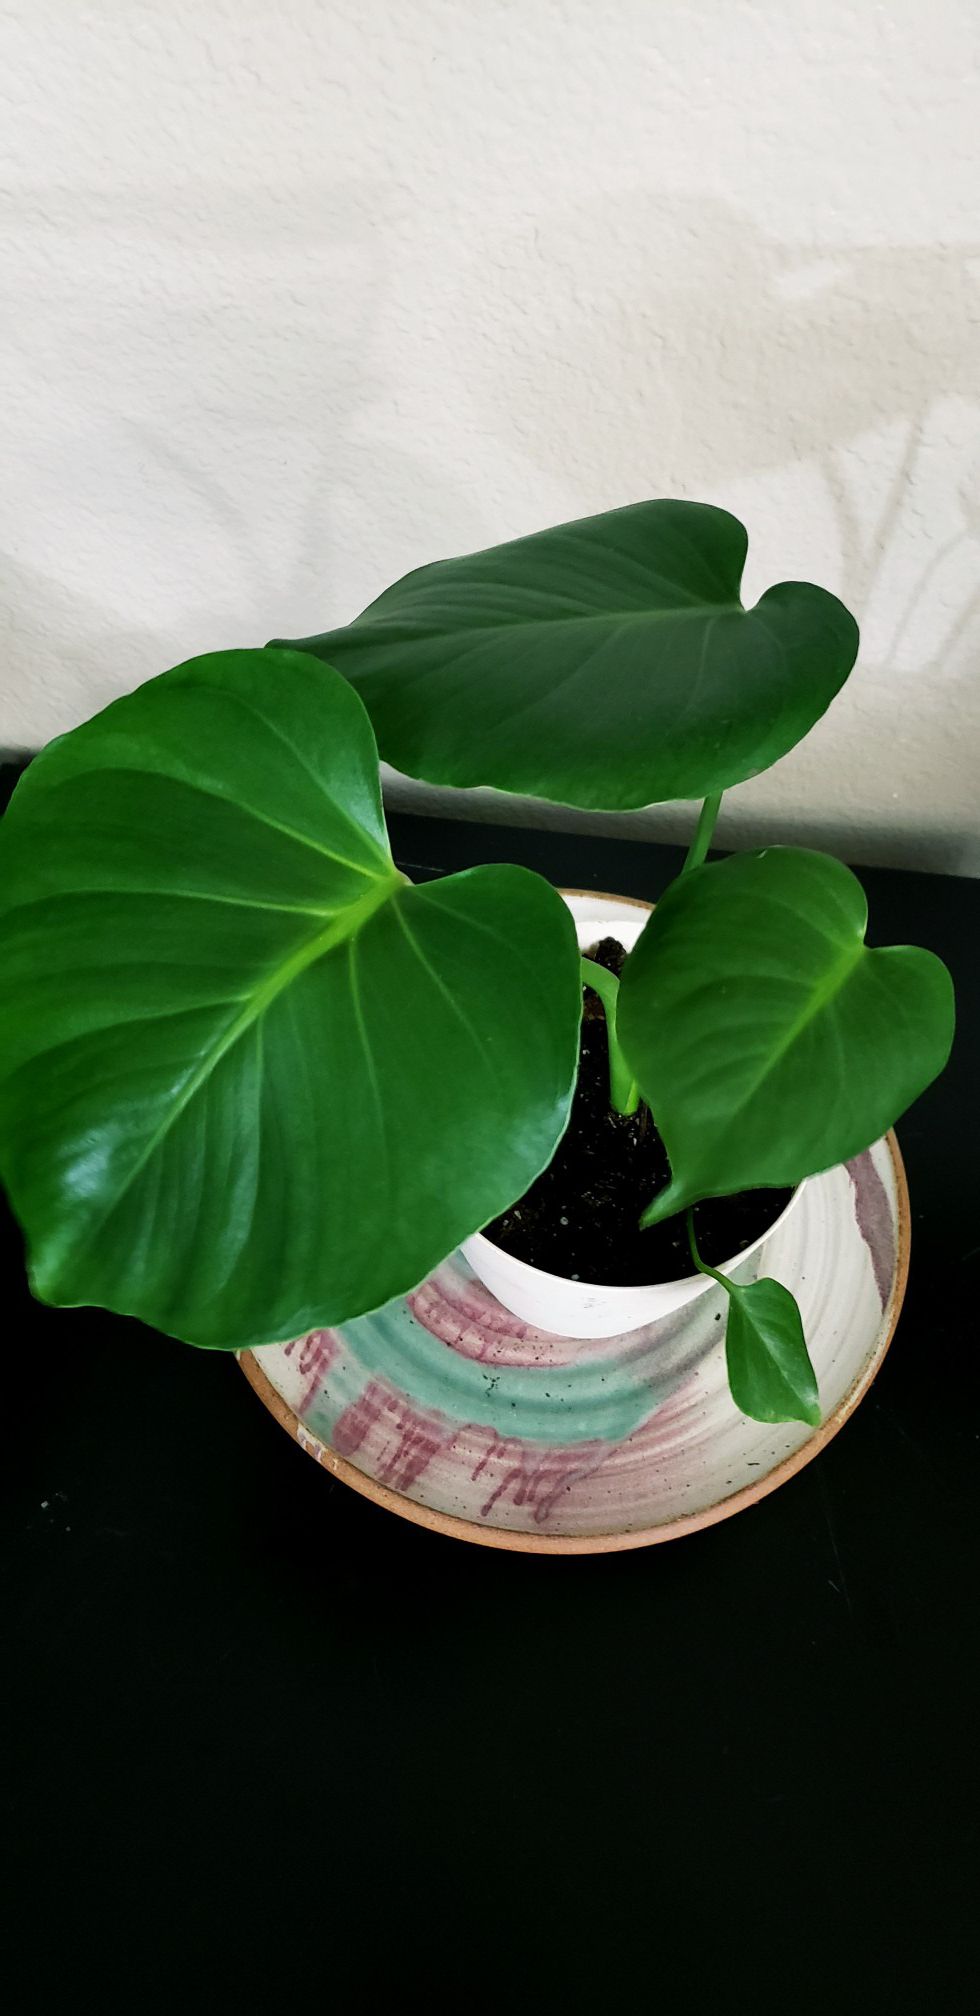 Live baby monstrea deliciosa plant in 6 inch diameter pot